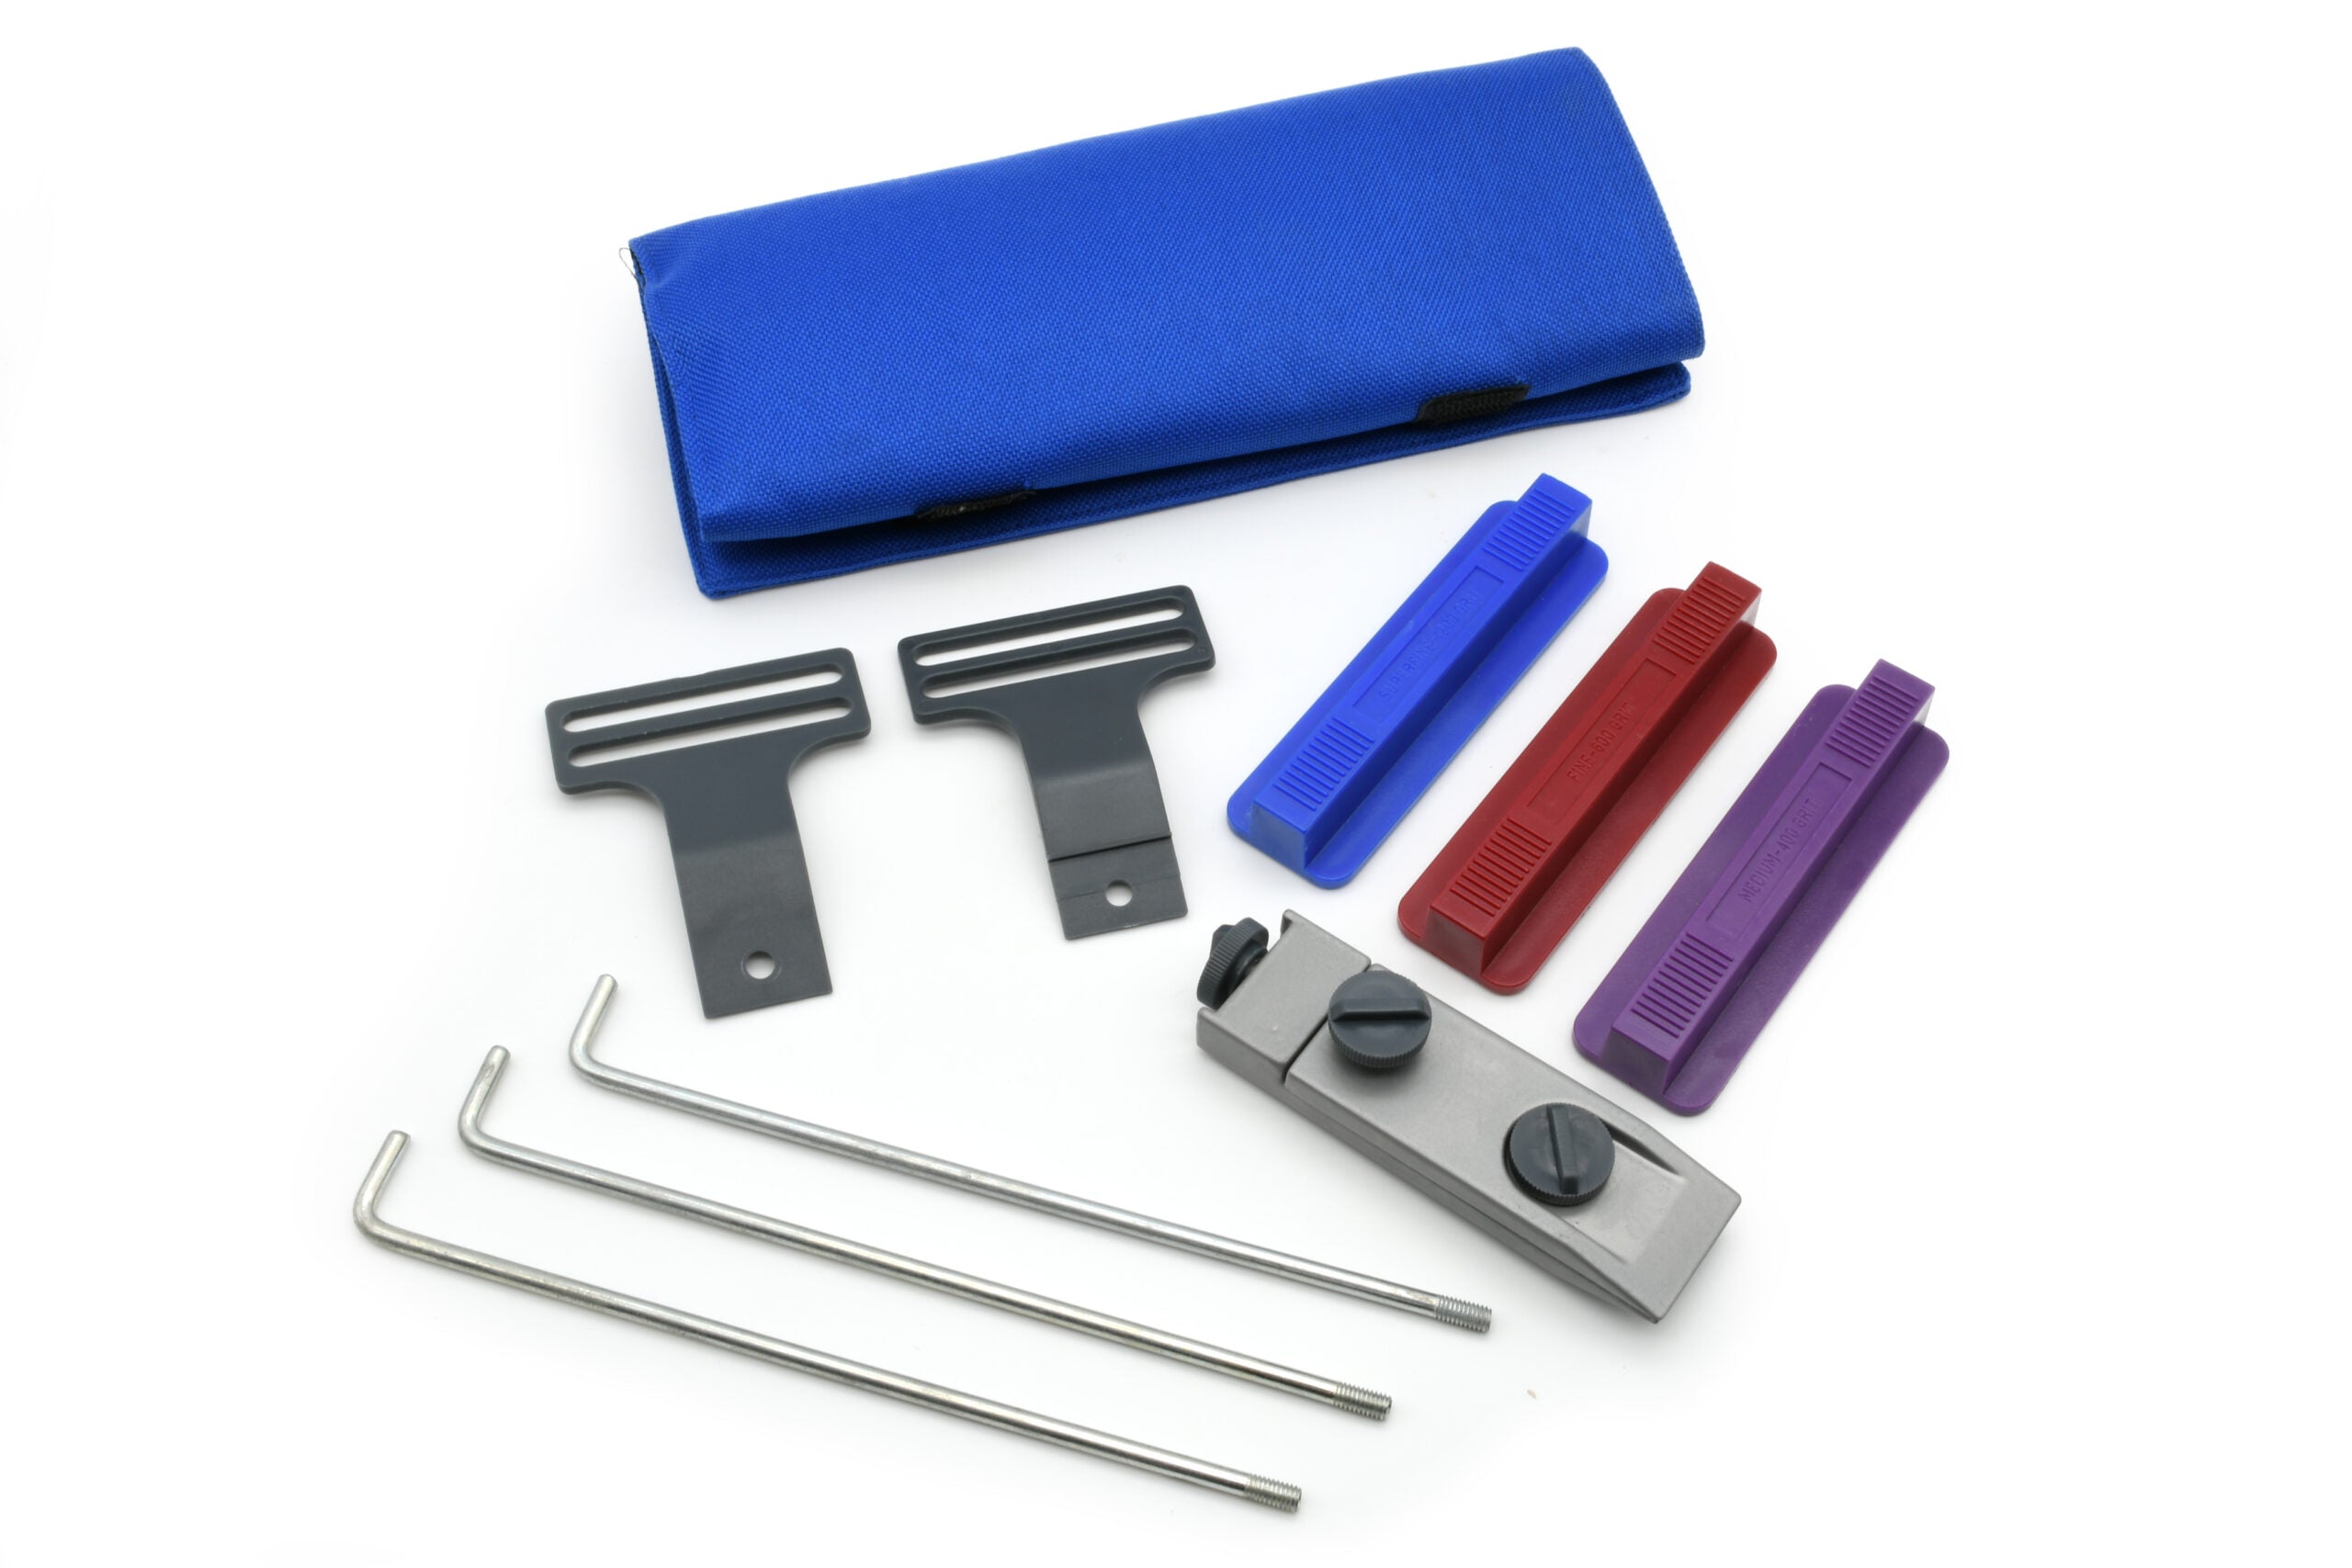 EZE-LAP Knife Sharpening Kit